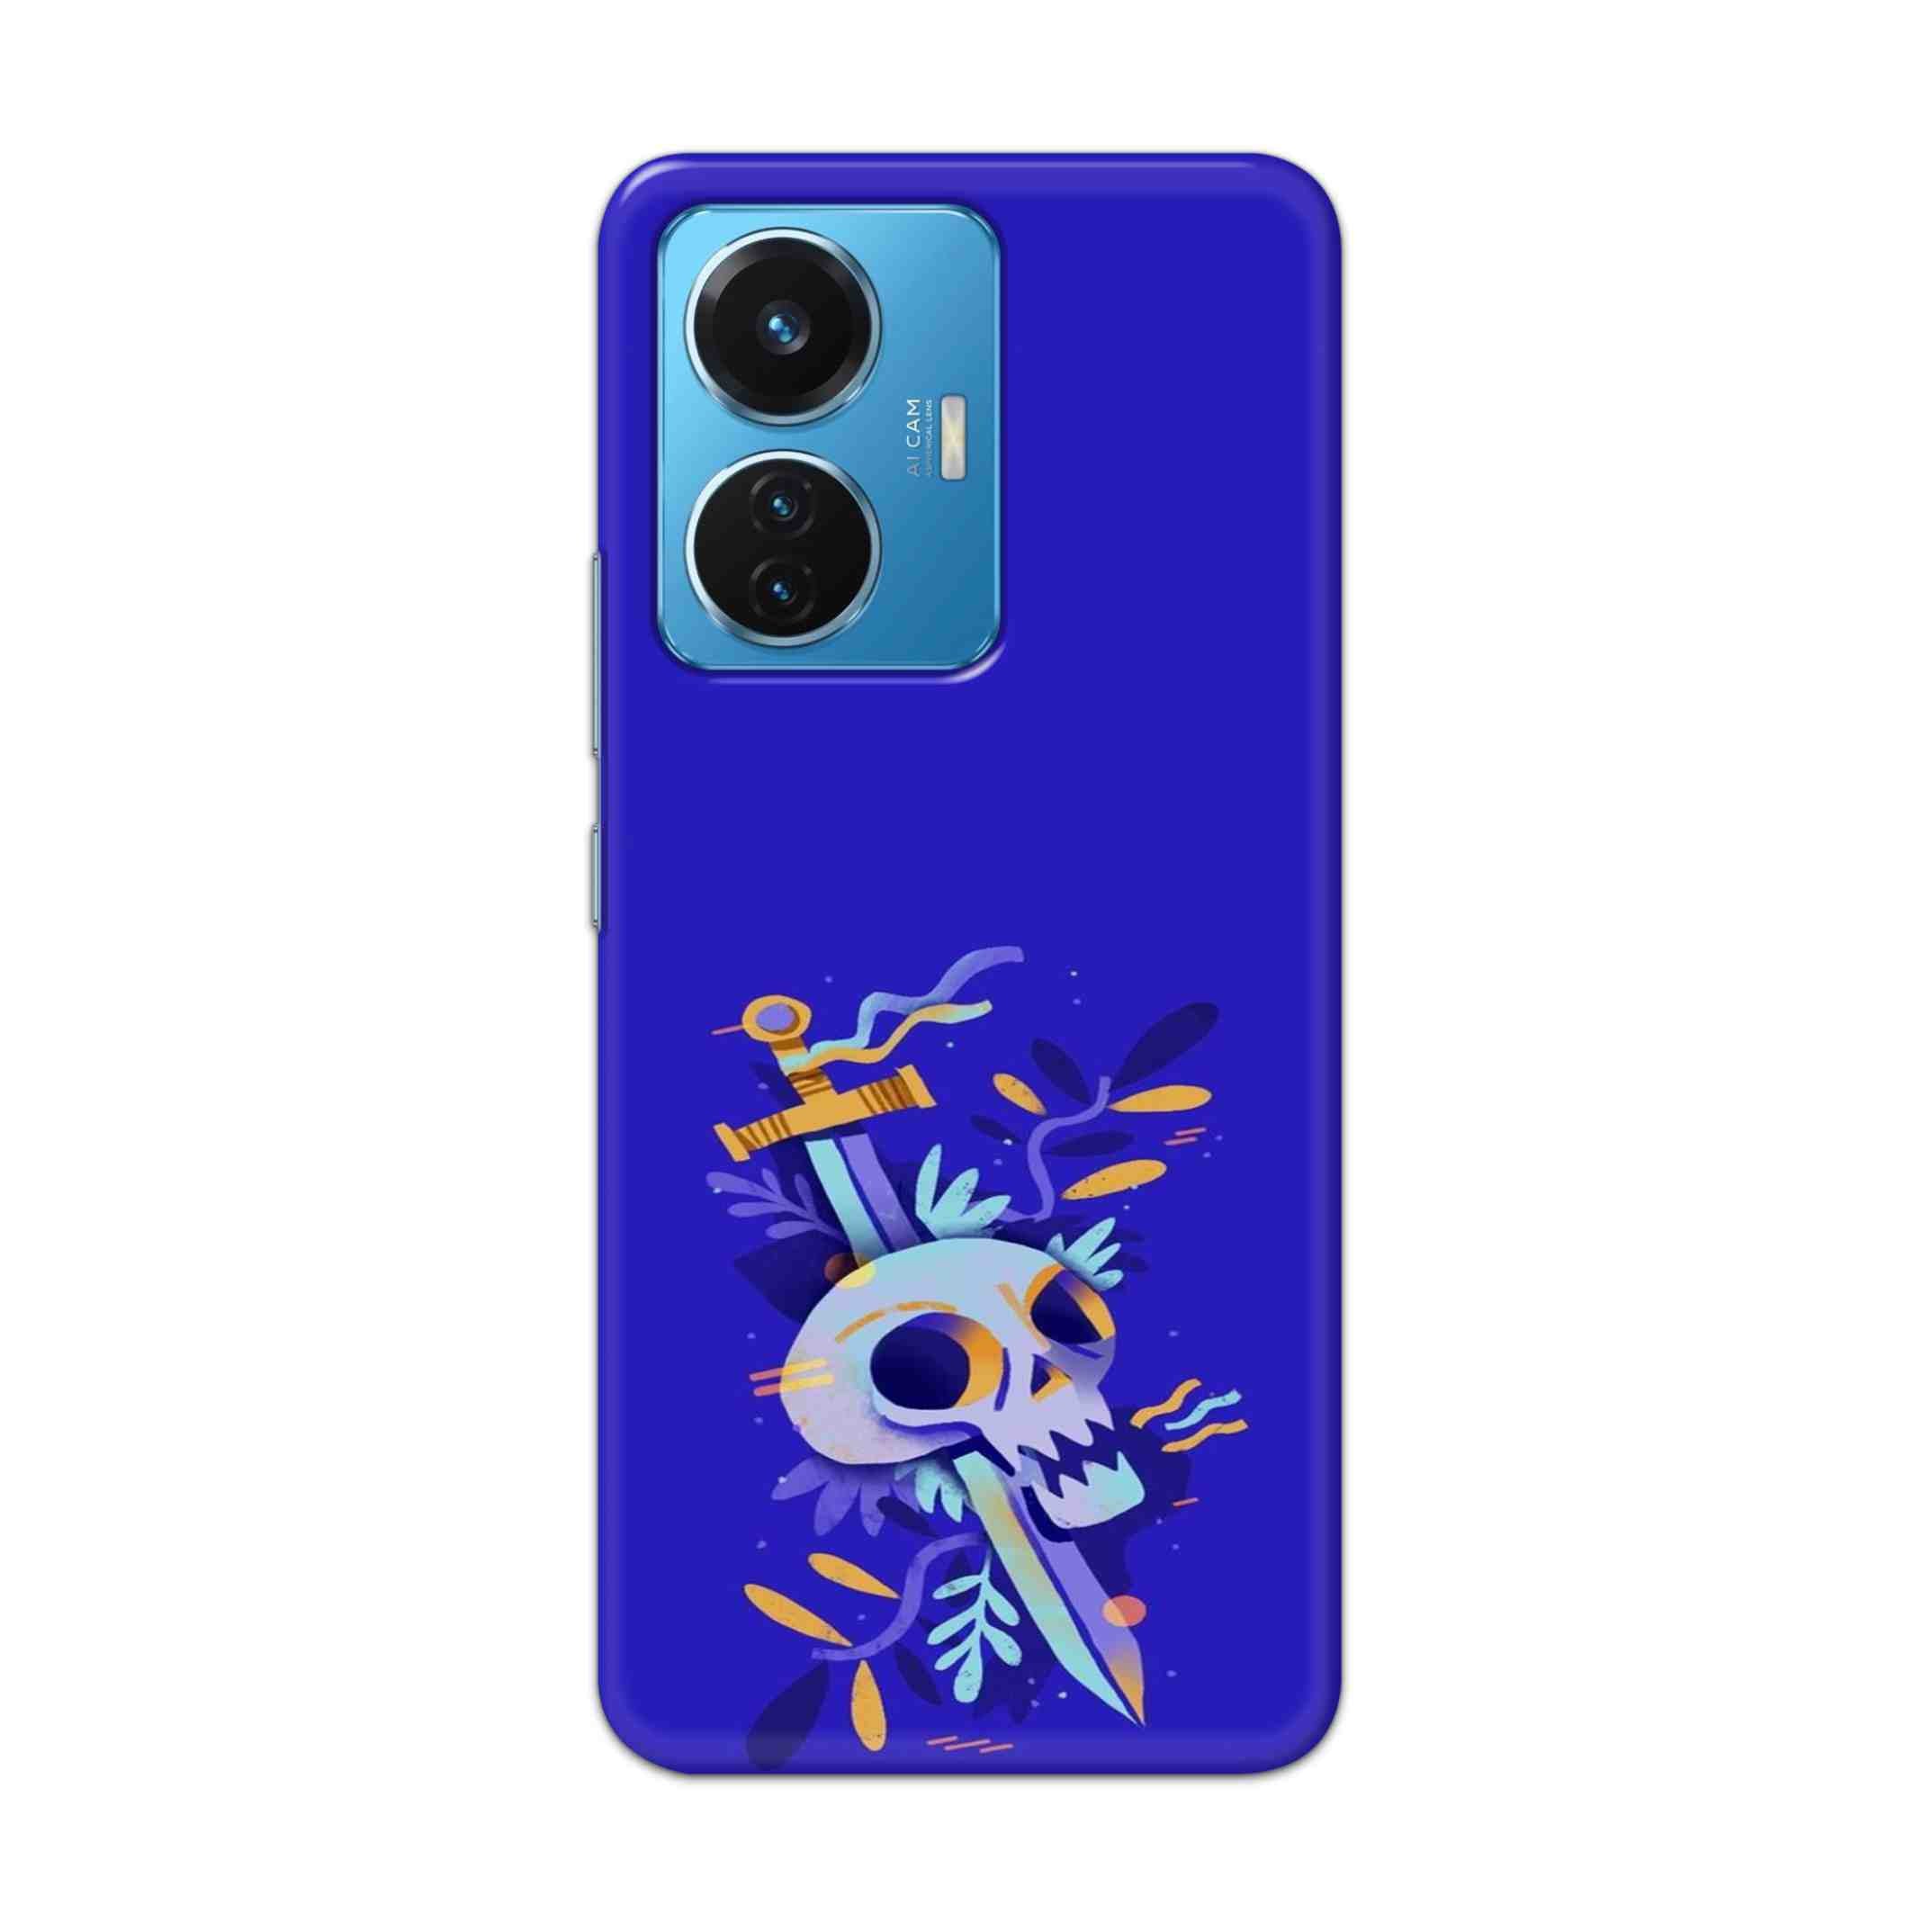 Buy Blue Skull Hard Back Mobile Phone Case Cover For Vivo T1 44W Online